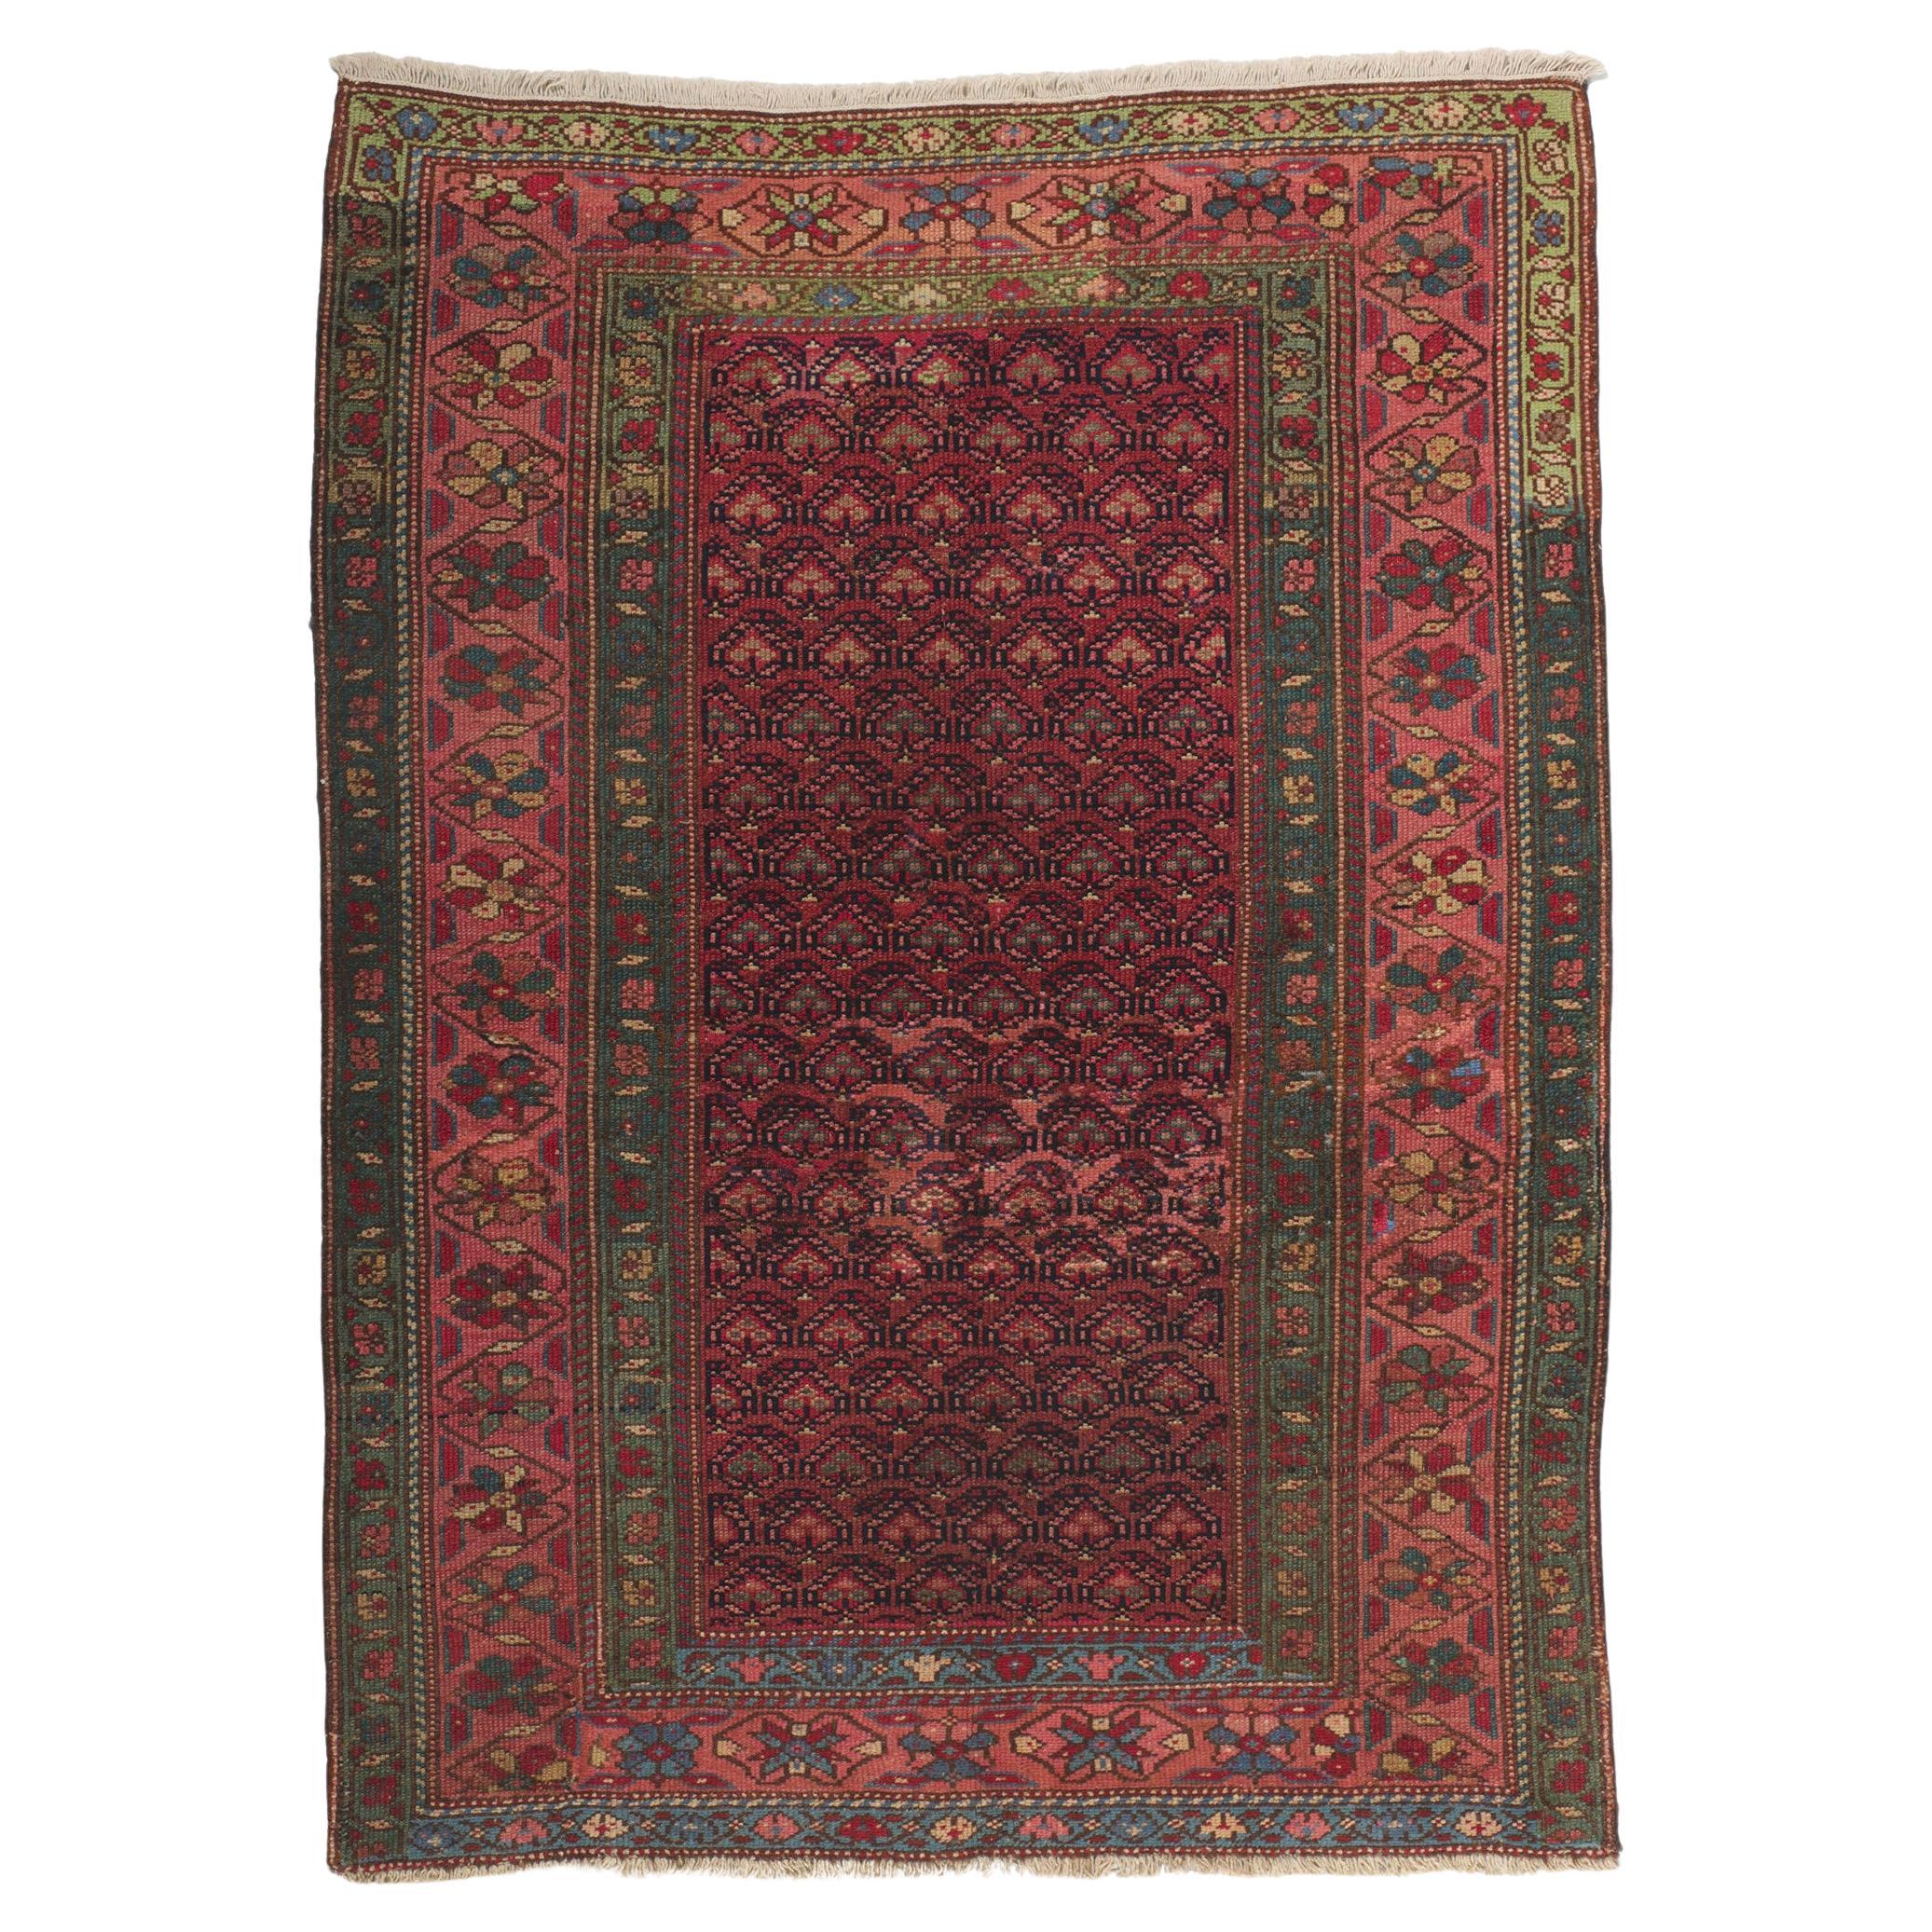 Antiker persischer Malayer-Teppich mit Boteh-Muster